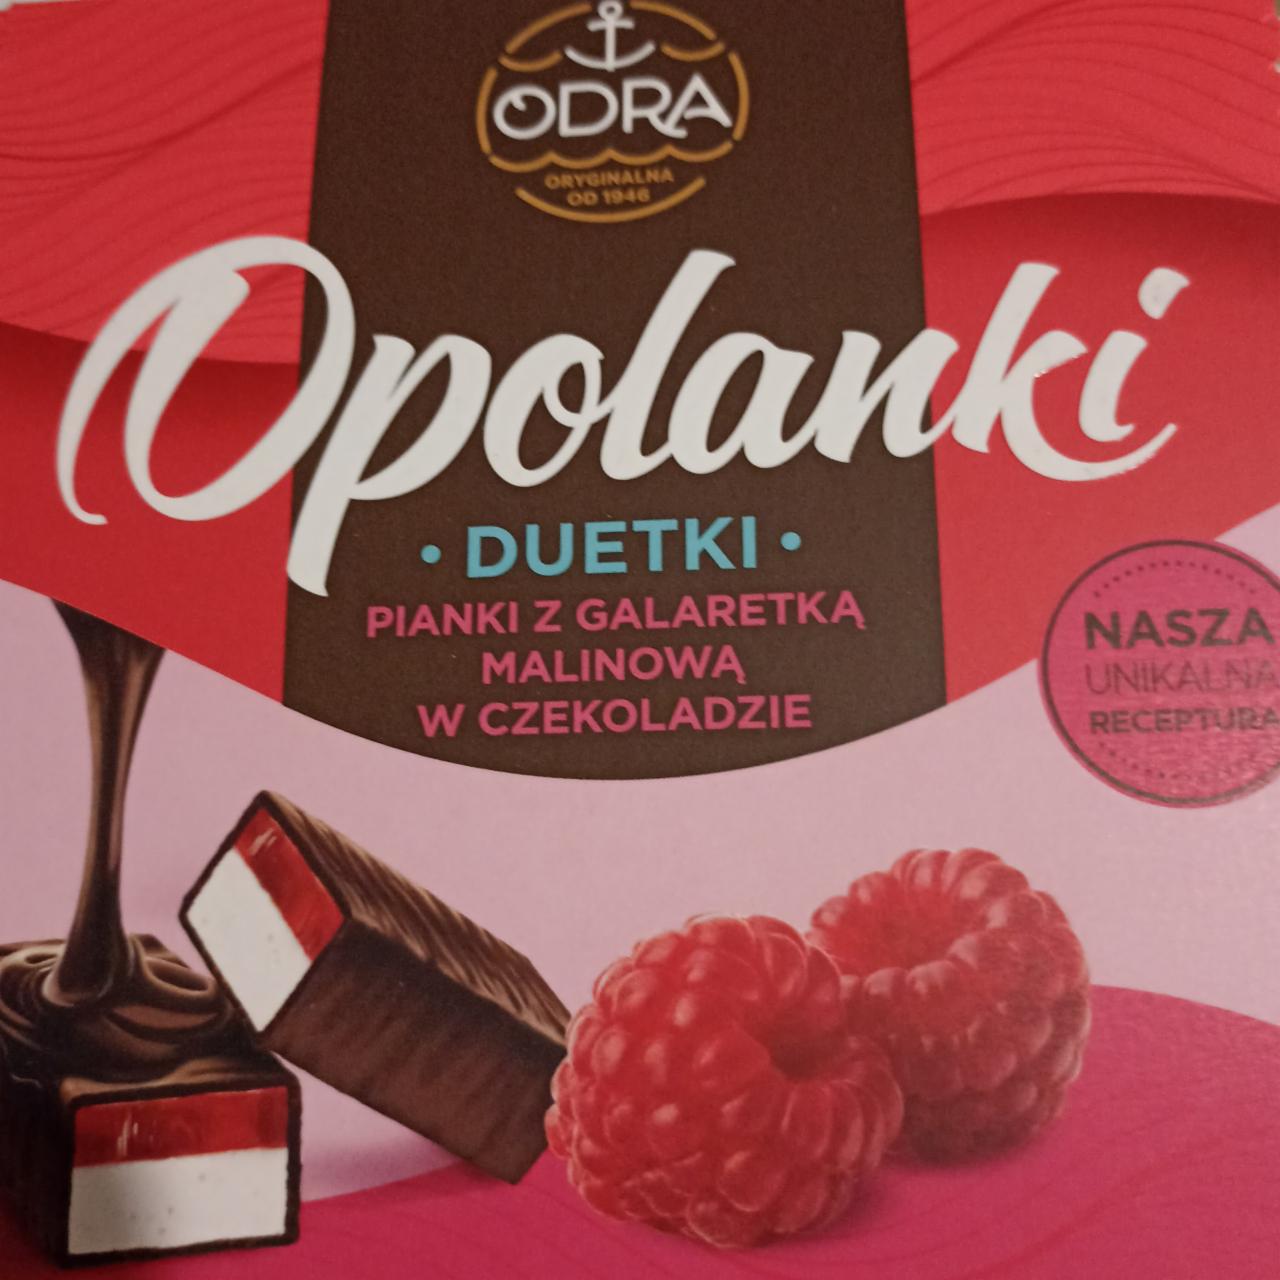 Фото - Opolanki duetki pianki z galaretka malinowa w czekoladzie Odra